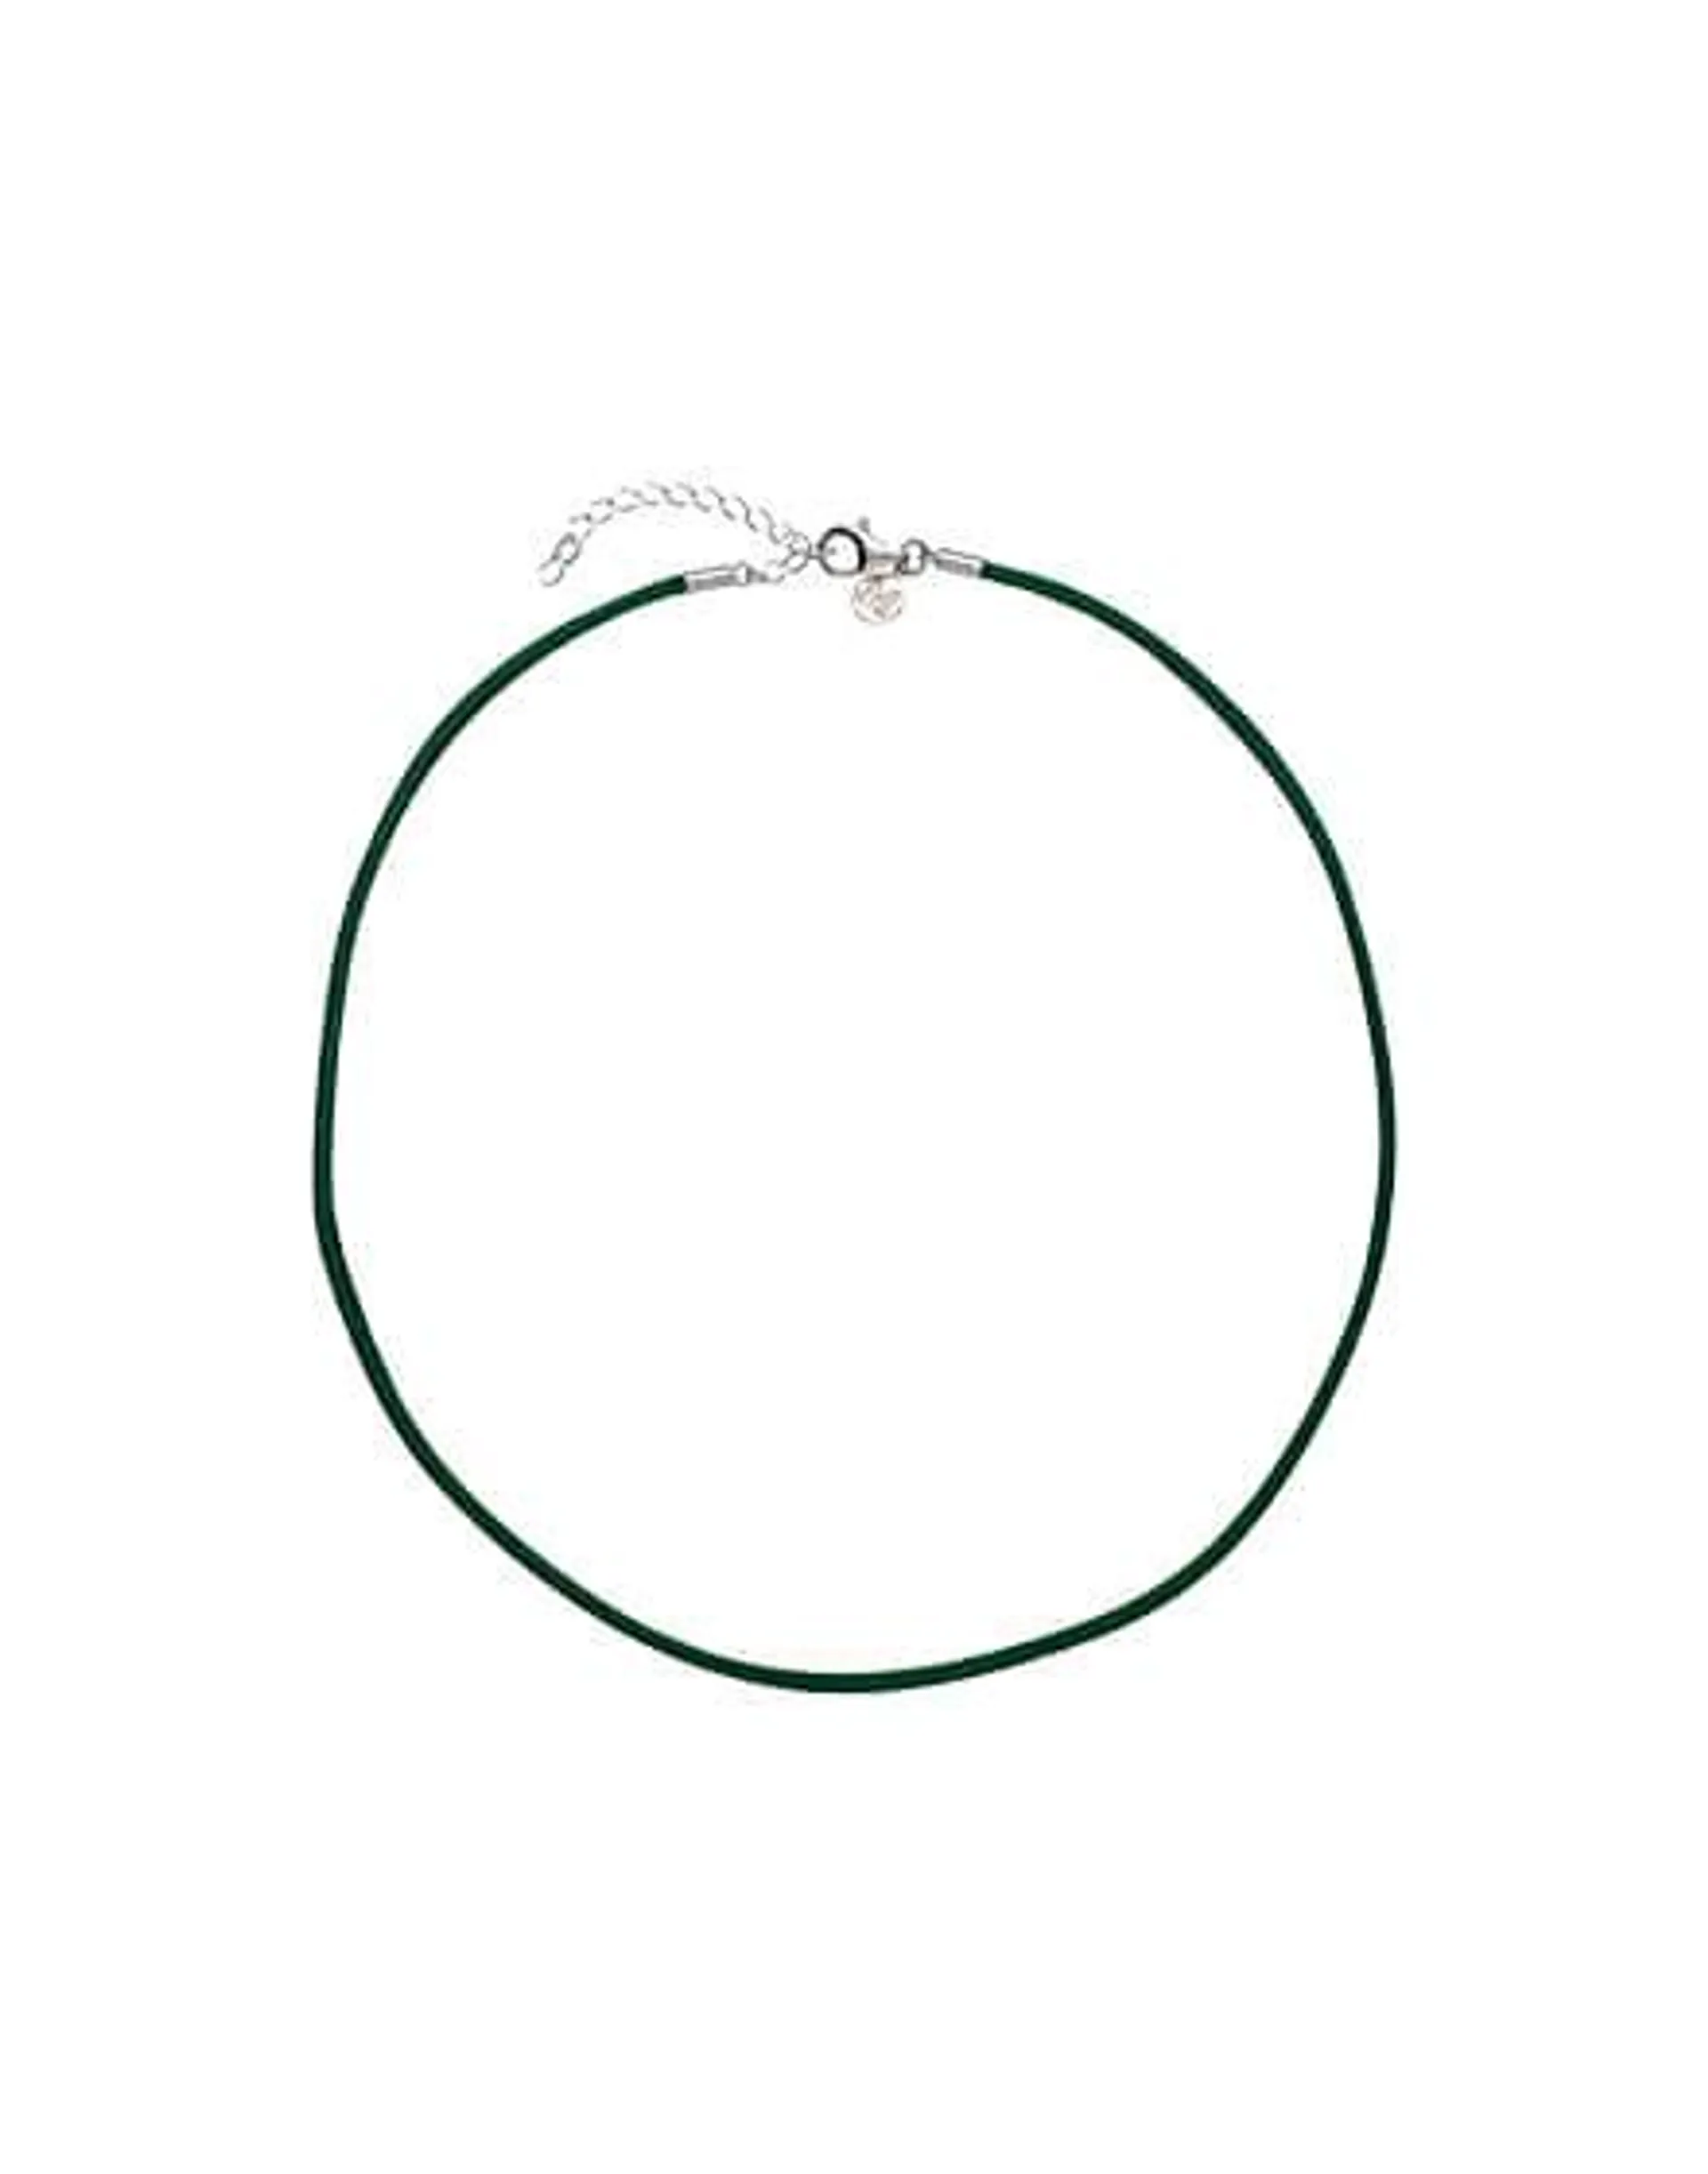 Choker de seda verde esmeralda 40 cm con broche en plata